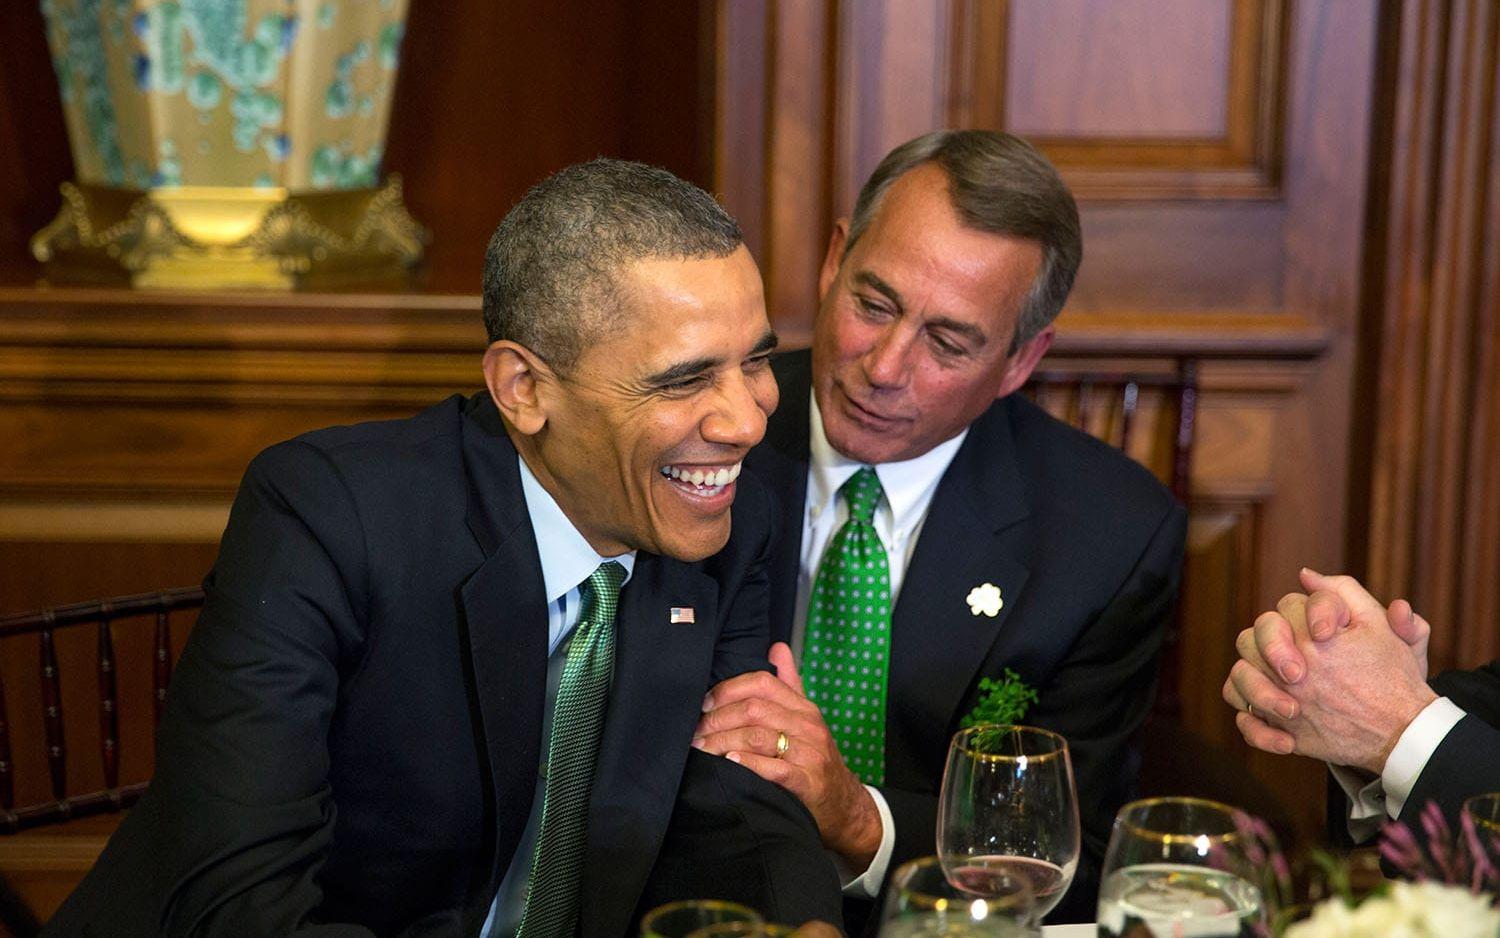 14 mars, 2014: Barack Obama delar ett skratt med talmannen John Boehner, republikan, under en lunch i Washington. Foto: Pete Souza / Vita Huset